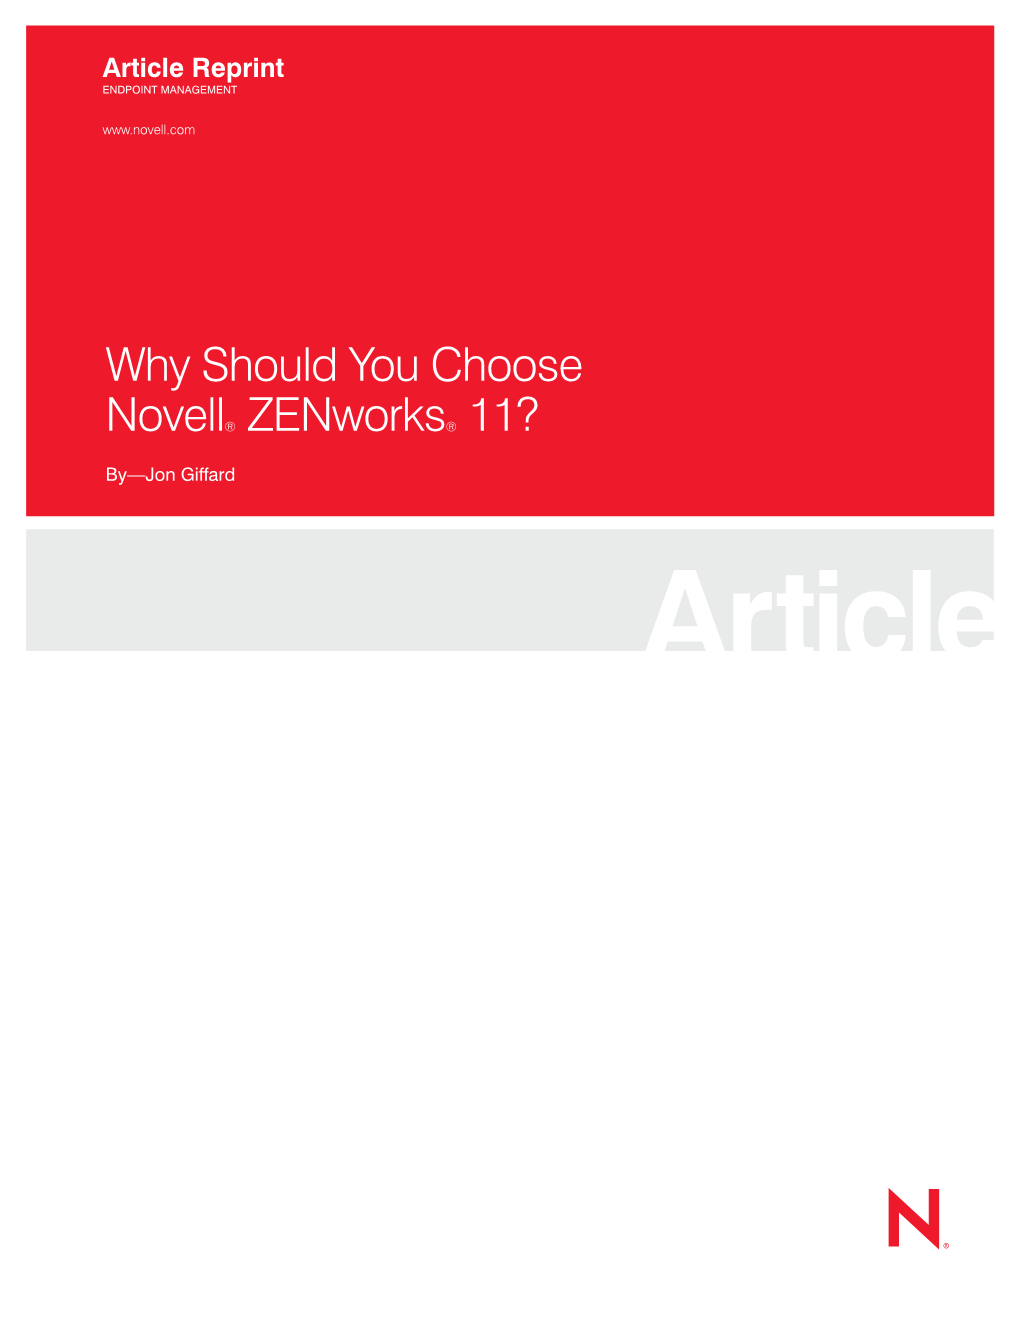 Why Should You Choose Novell® Zenworks®